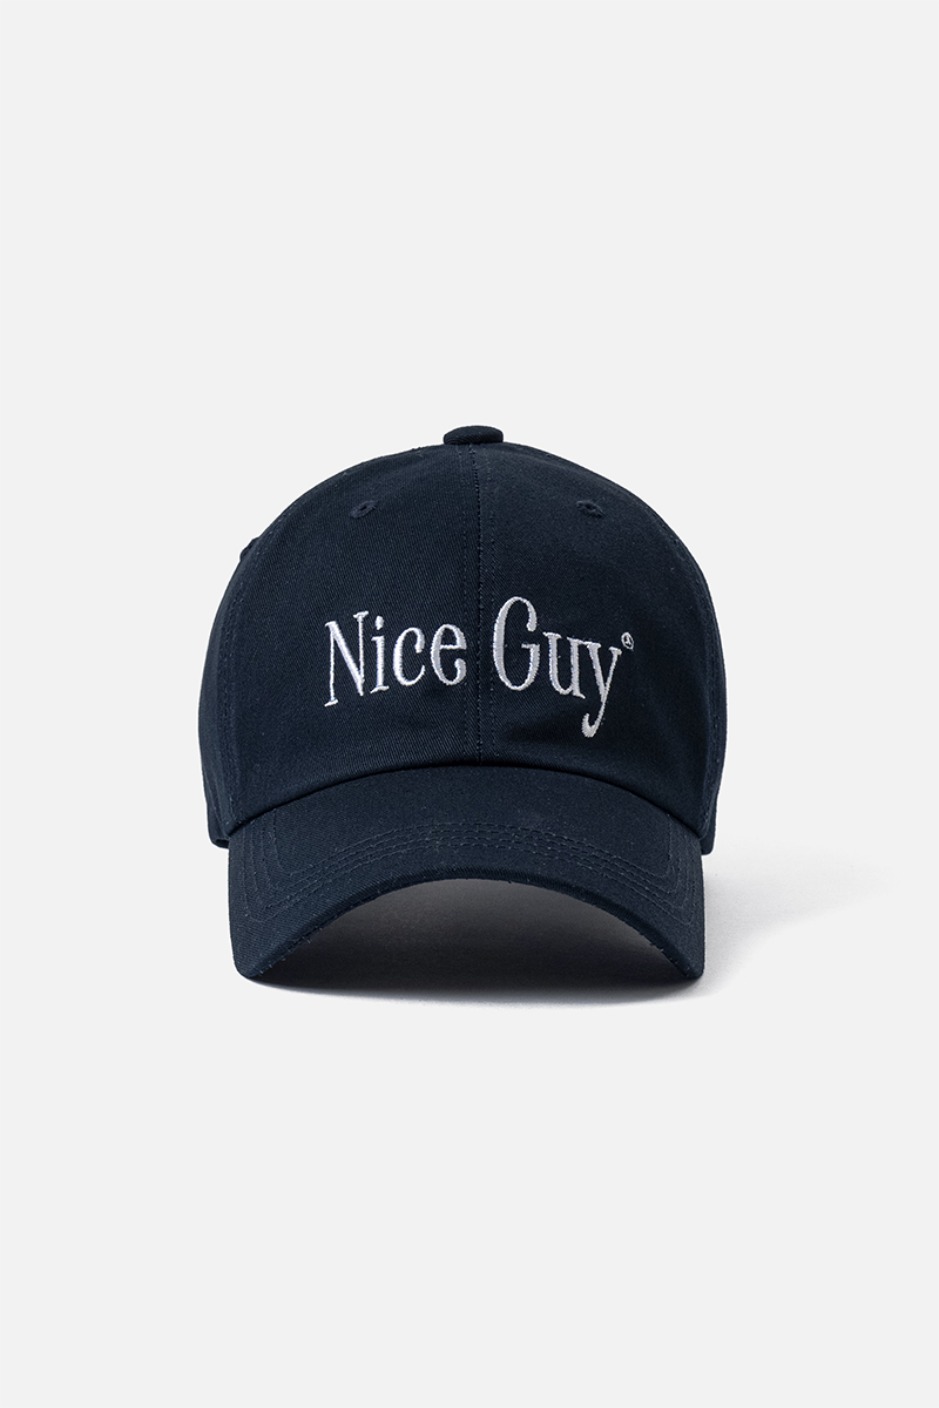 NICE GUY CAP-NAVY